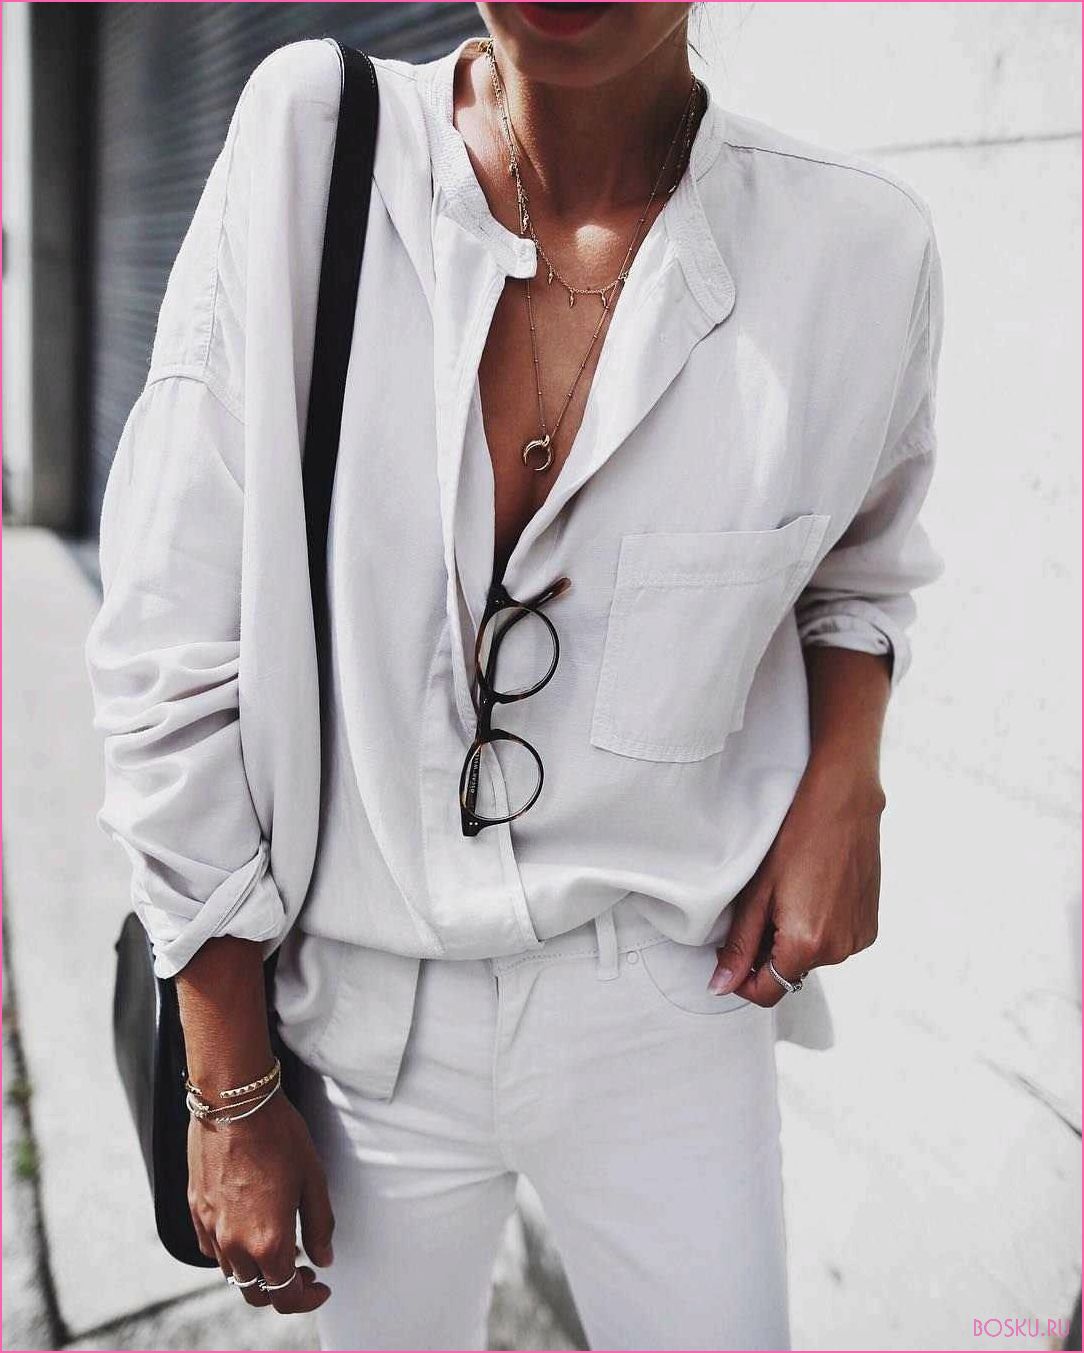 Как носить белую рубашку: 10 модных образов